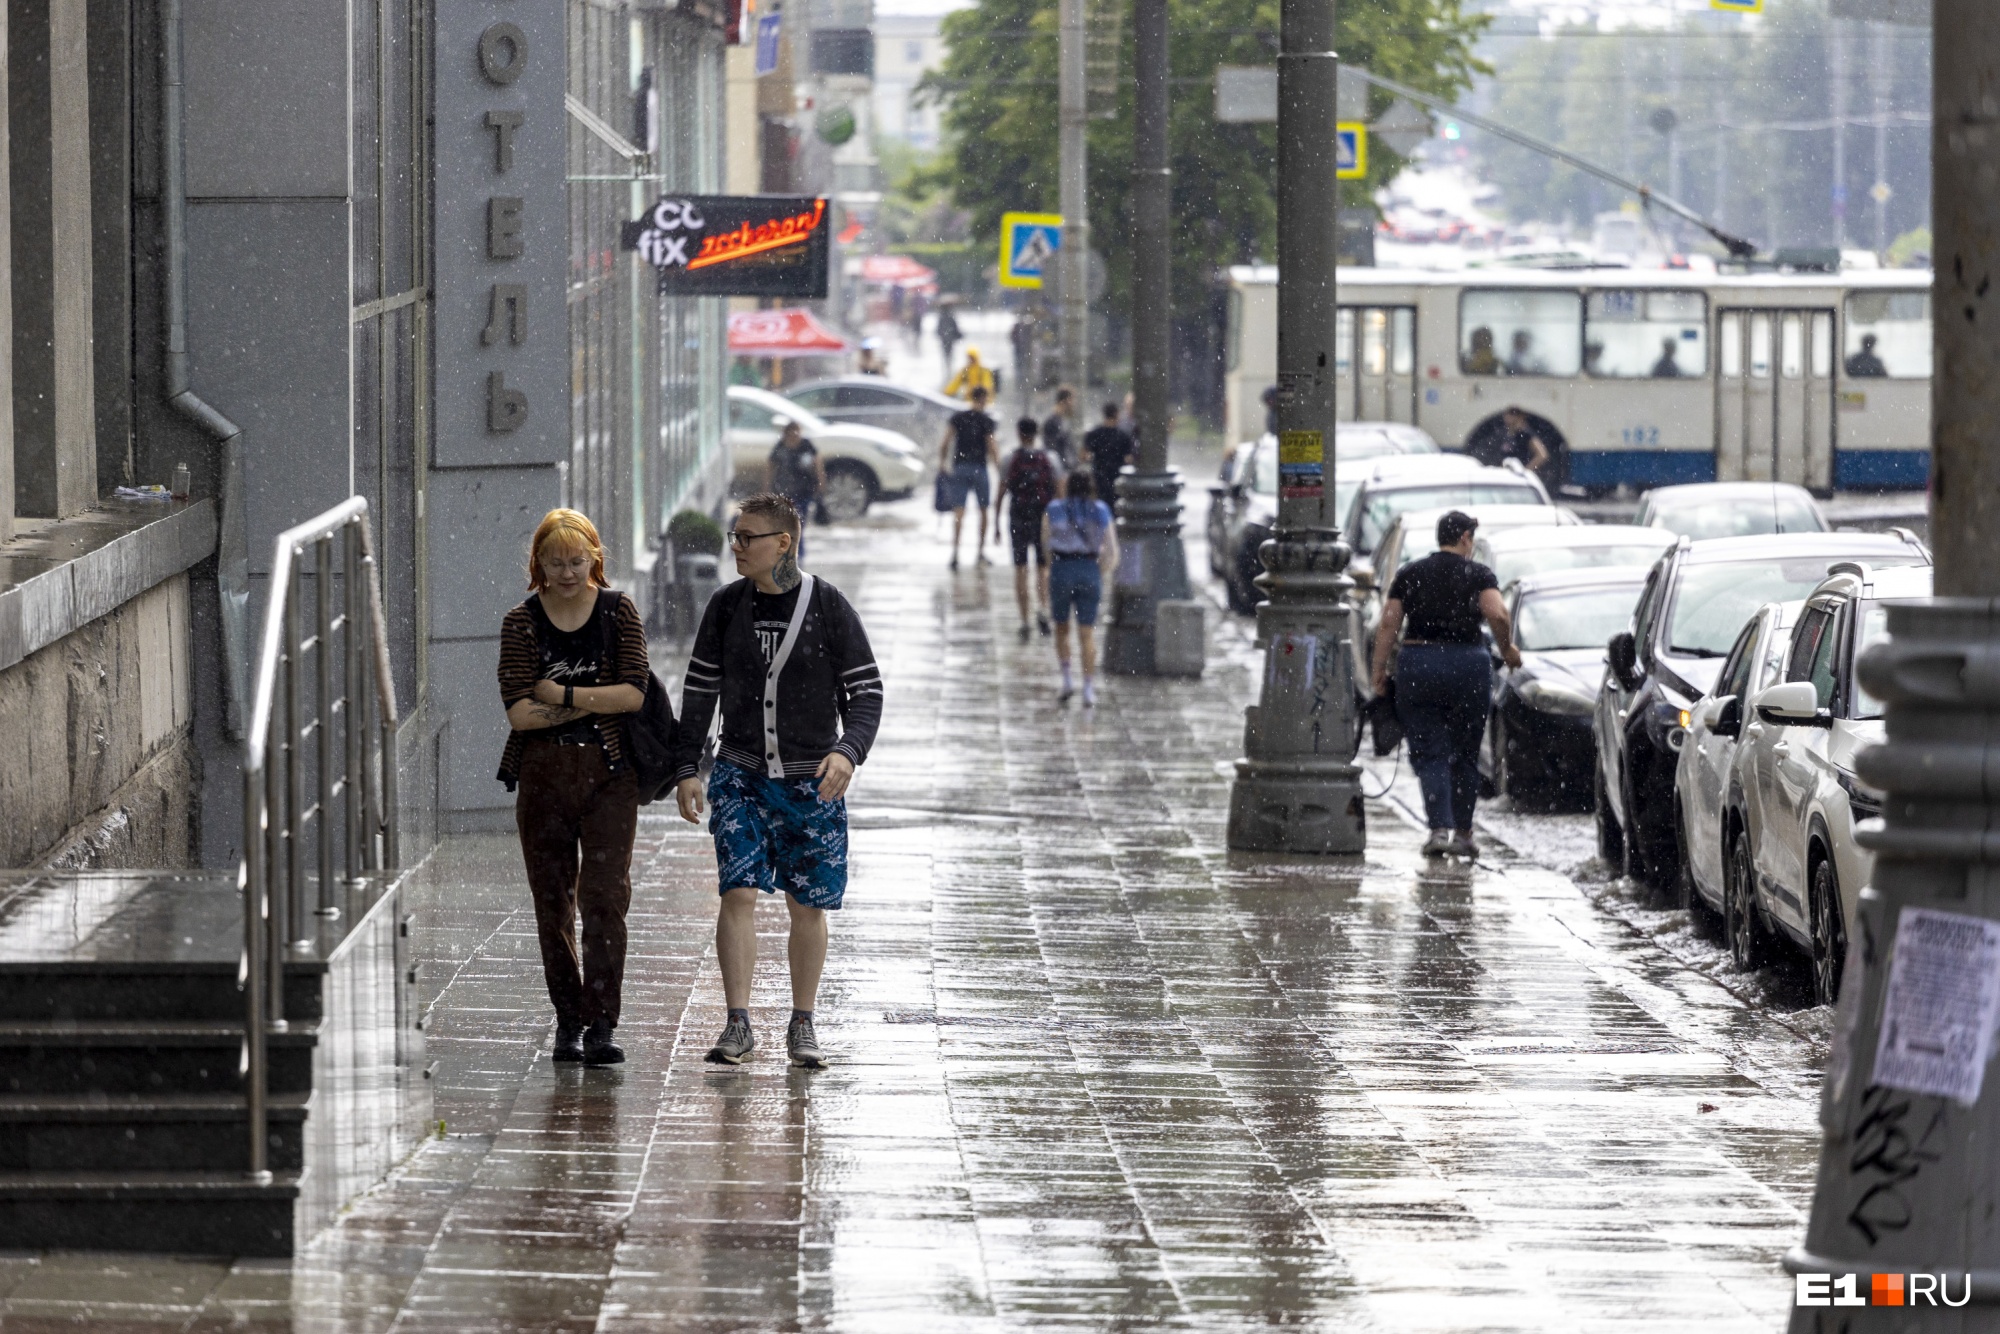 Грянул летний гром: мокрый фоторепортаж из центра Екатеринбурга во время грозы